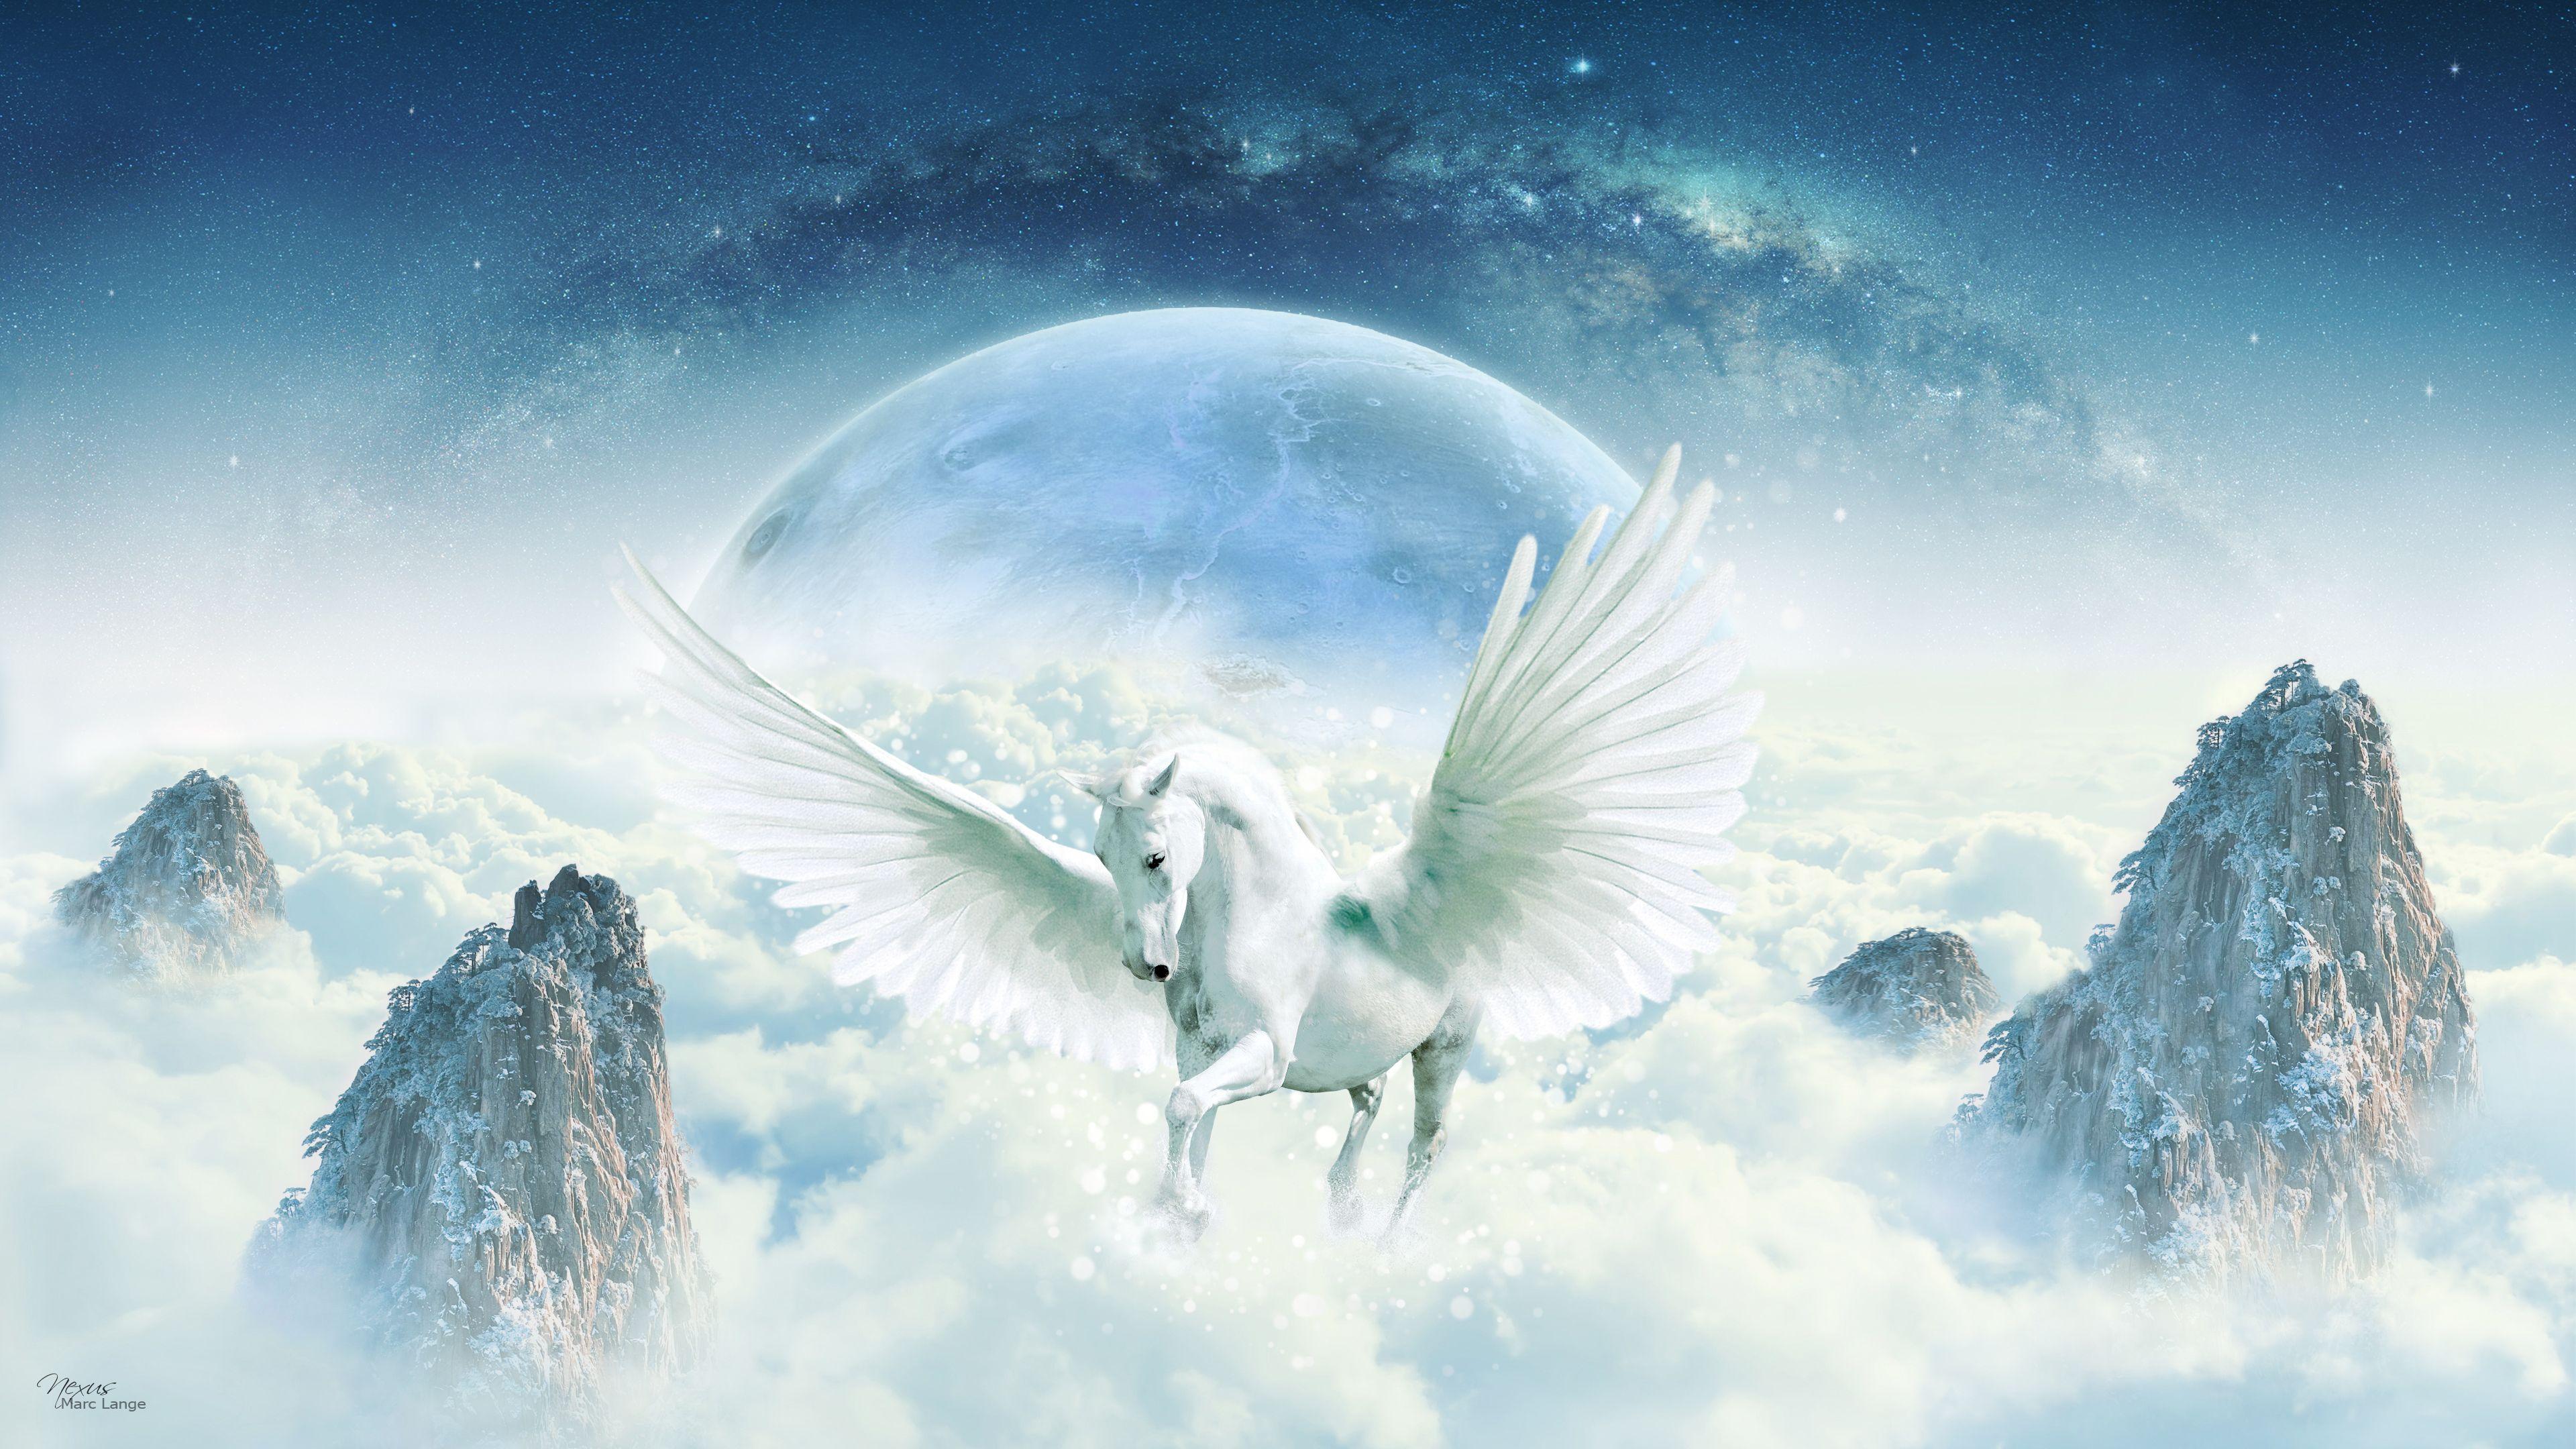 Pegasus Wallpapers Top Free Pegasus Backgrounds Wallpaperaccess